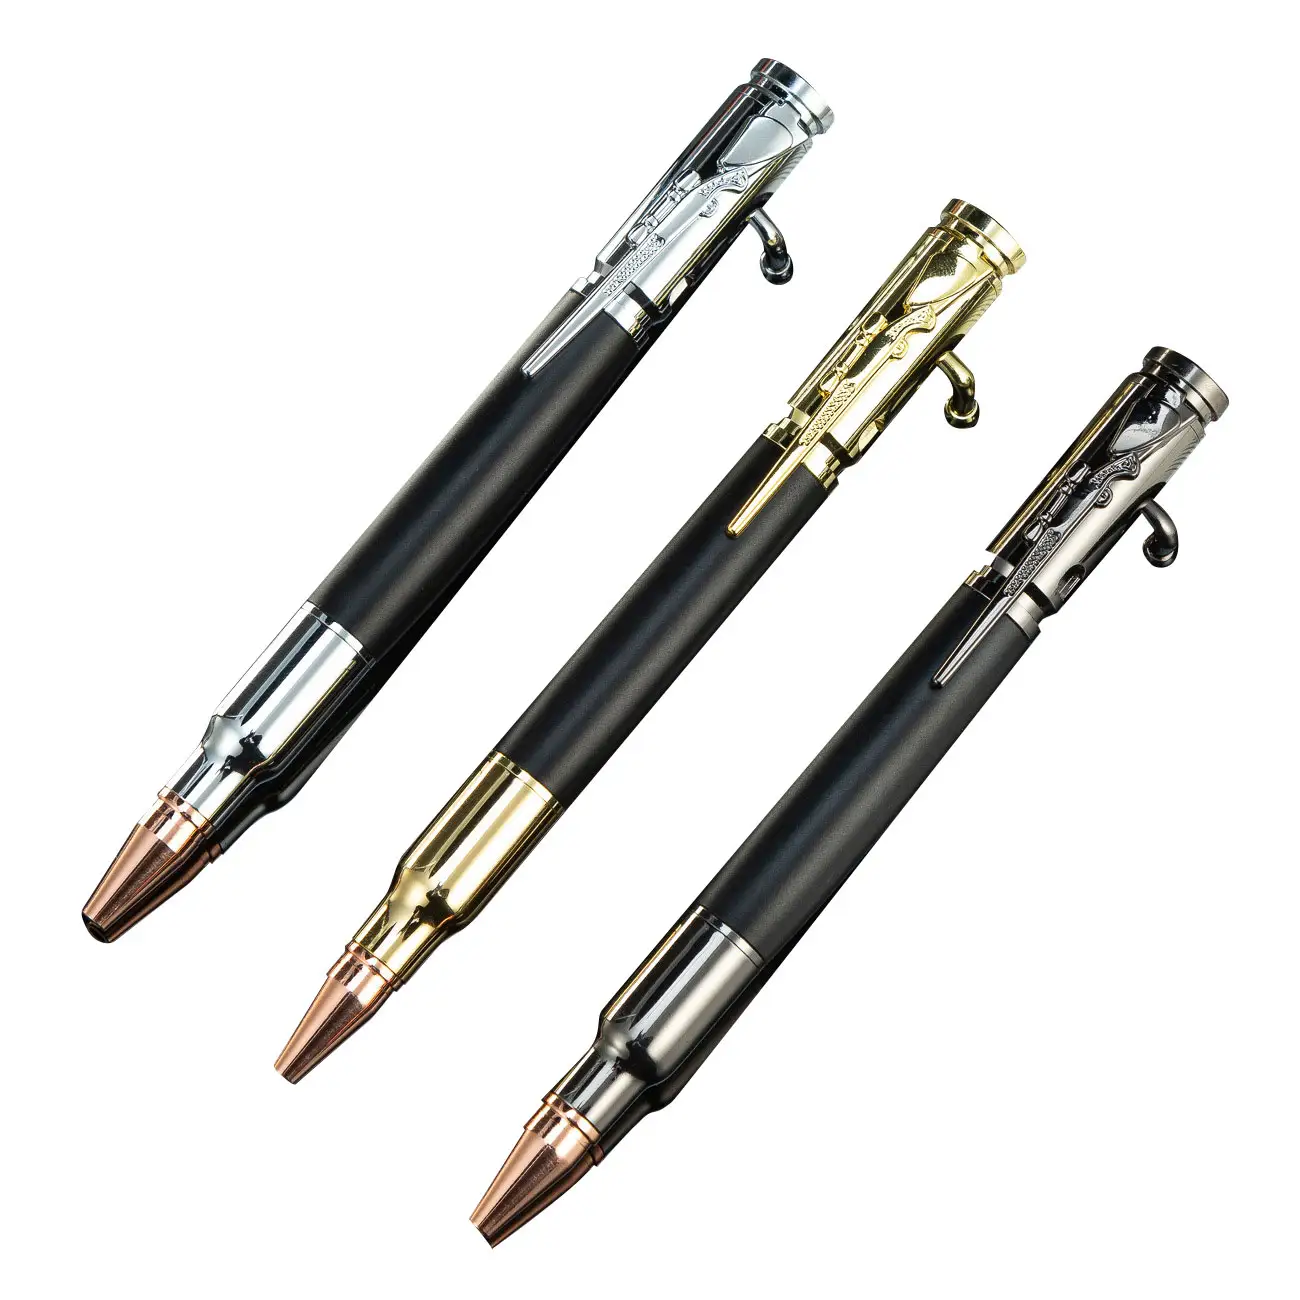 Soododo XDHH-00059 Promotion wholesale Creative metal gun pen Press machine gun pen print logo multi-function ballpoint pen